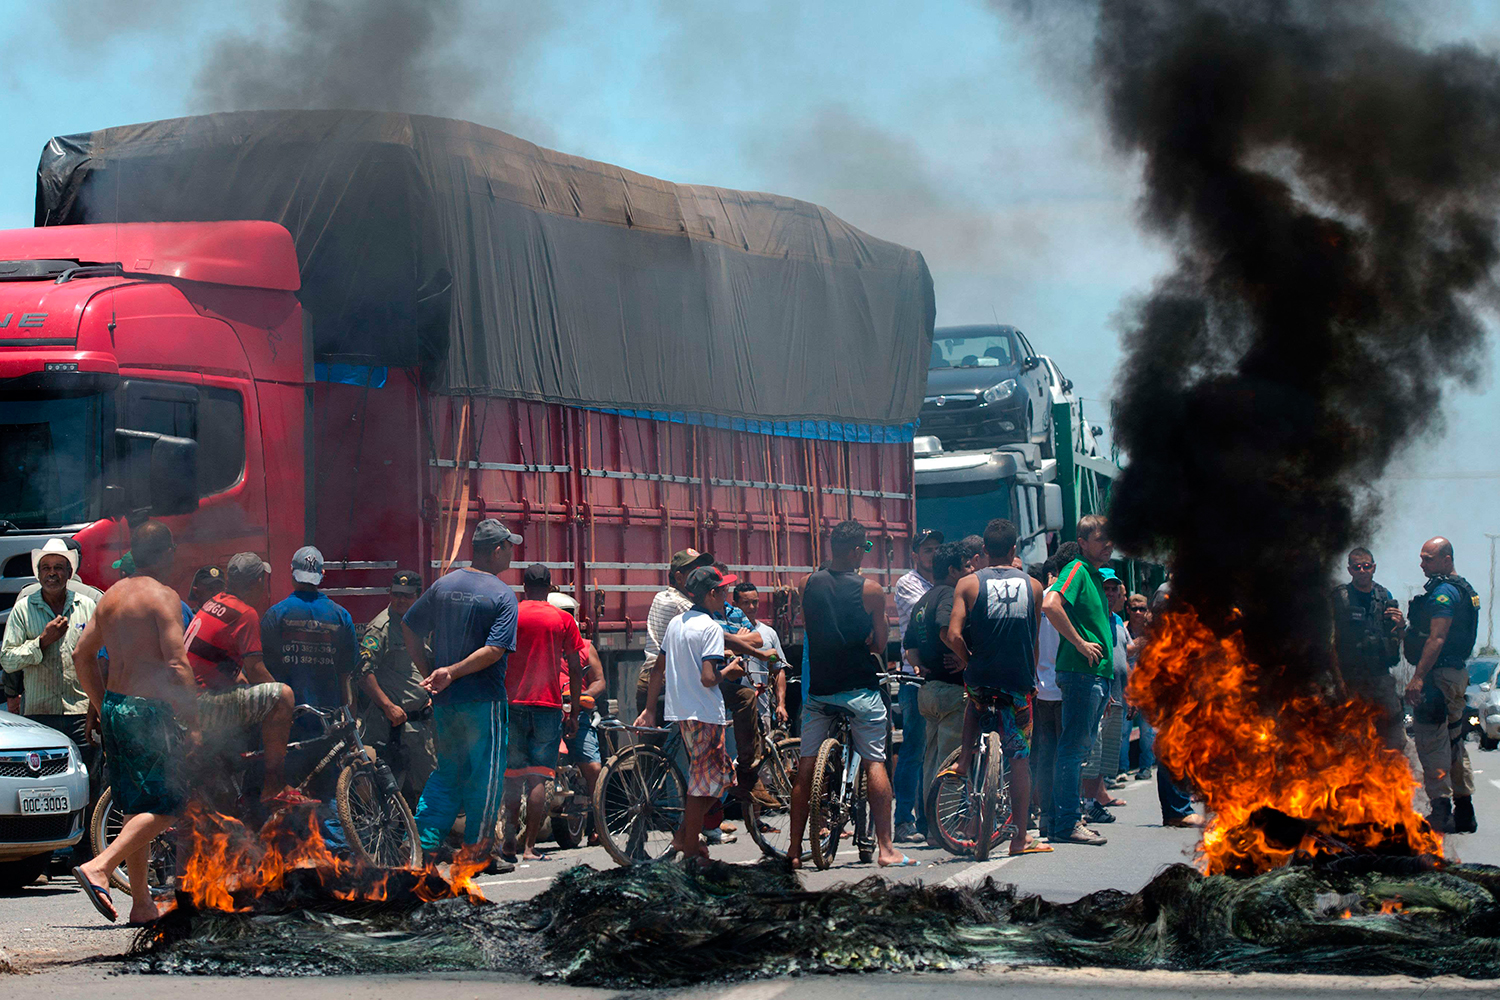 Main streets in Brazil blocked by a massive trucker strike